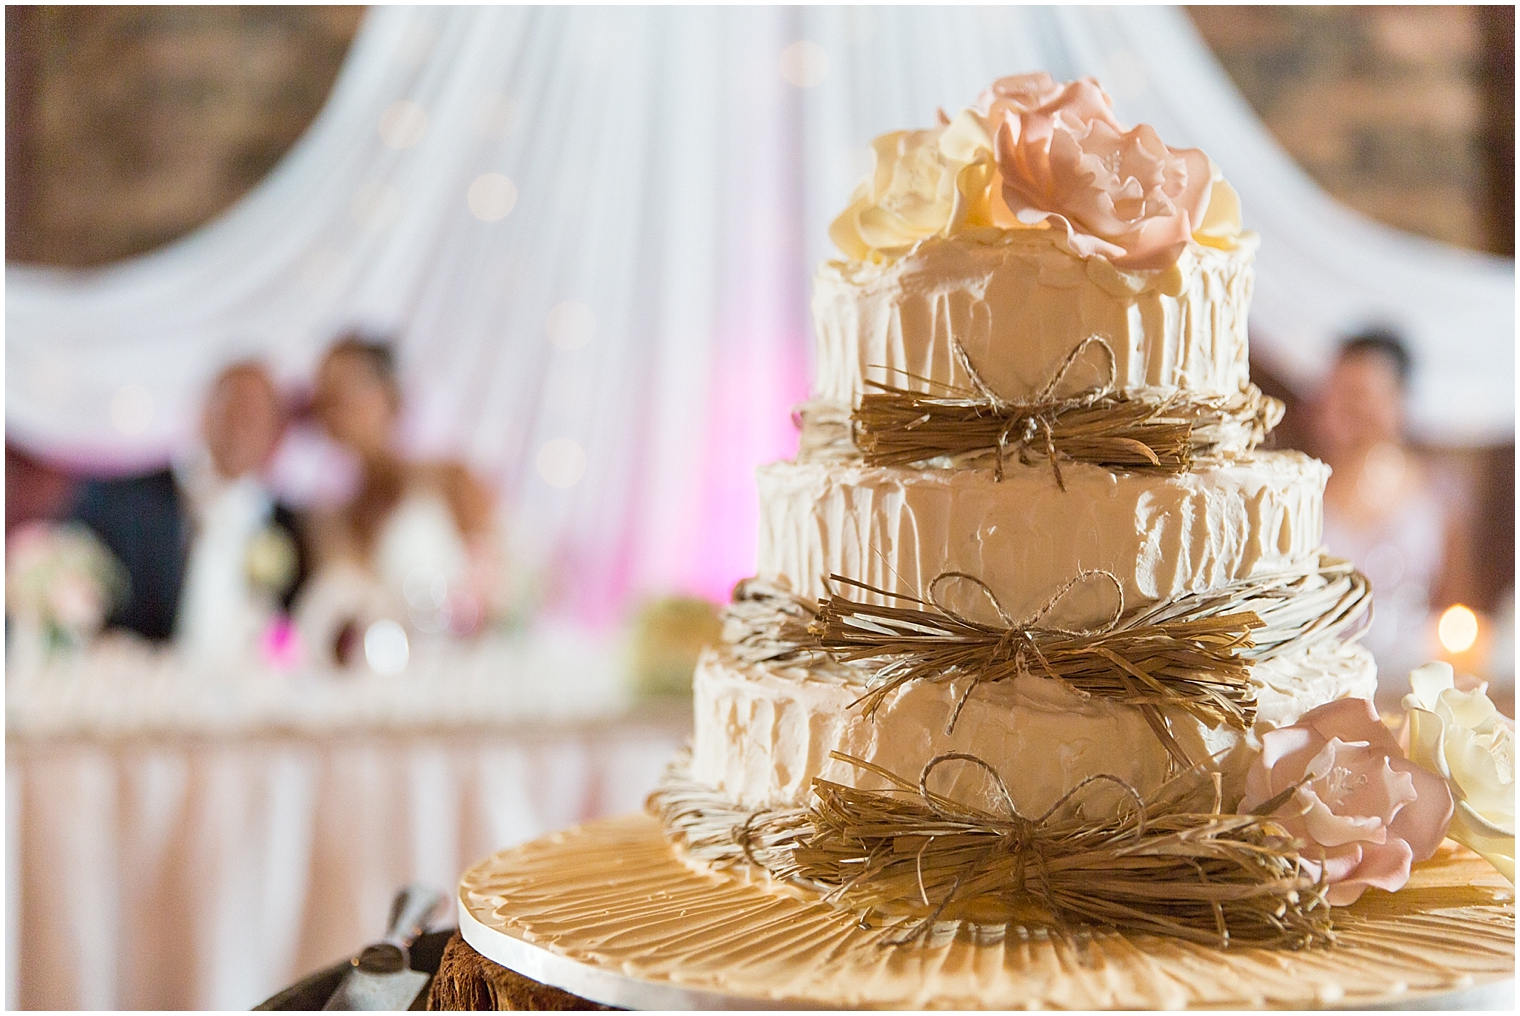 Sydney Wedding Photographer, Wedding Cake